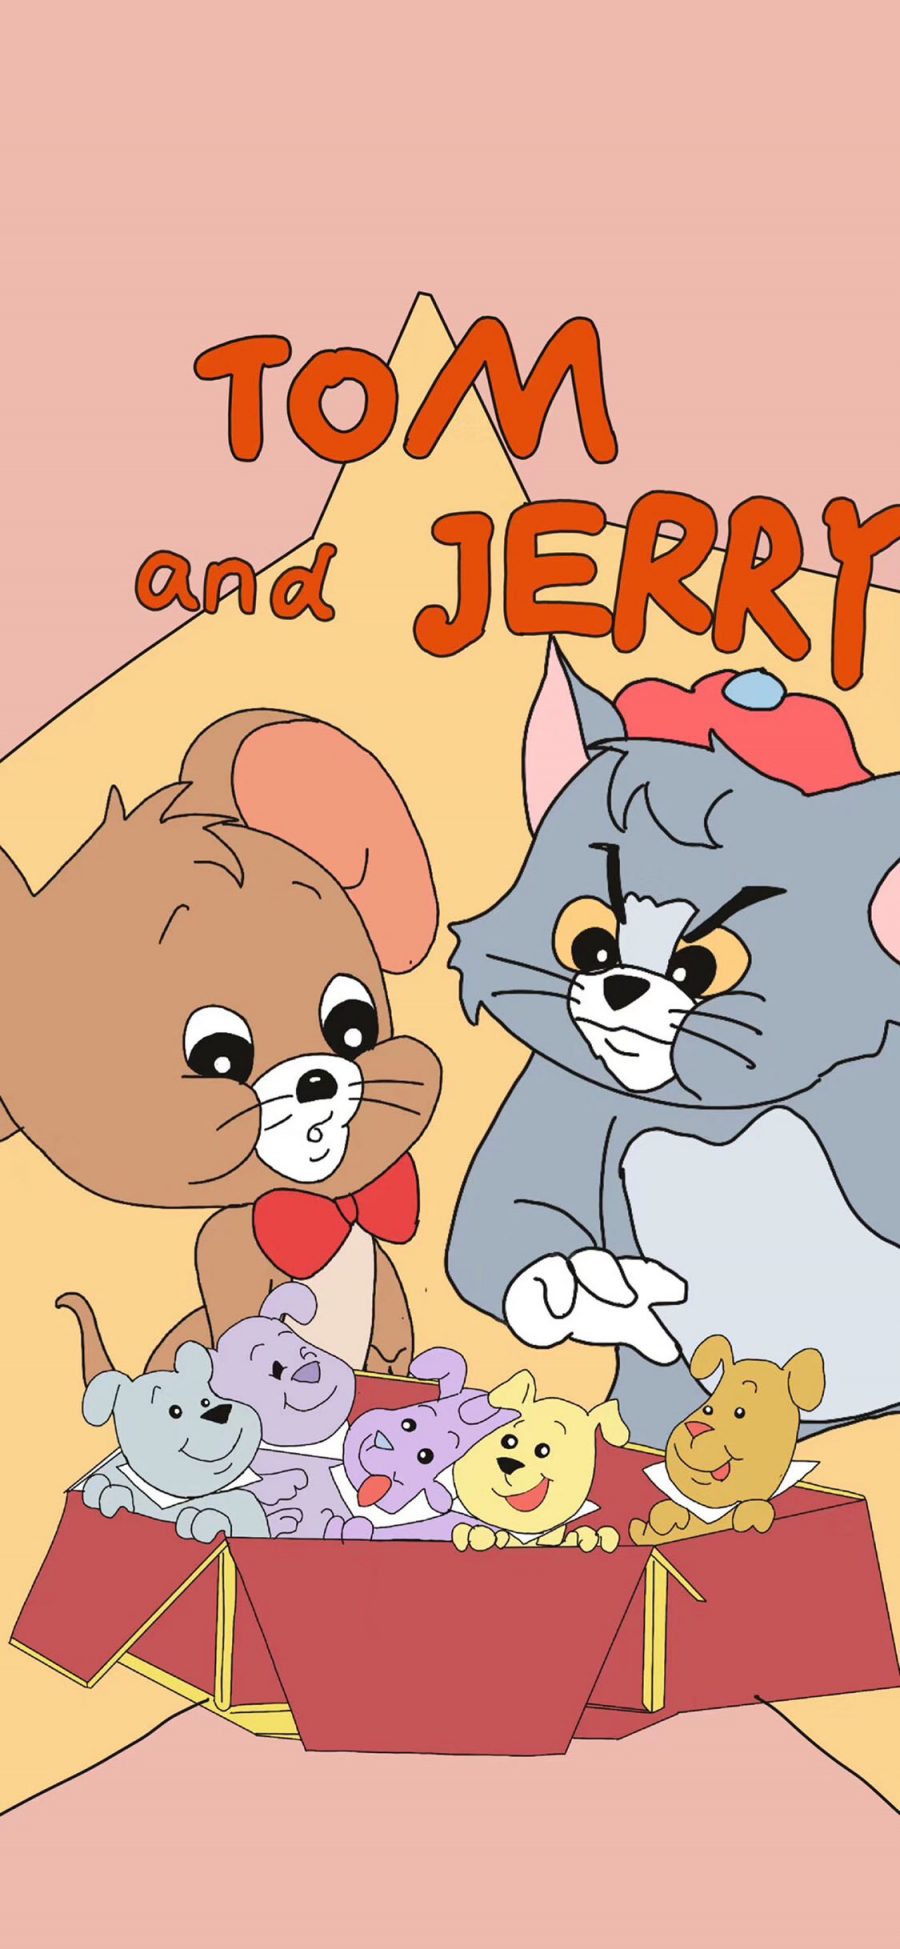 [2436×1125]Tom and Jerry 猫和老鼠 苹果手机动漫壁纸图片